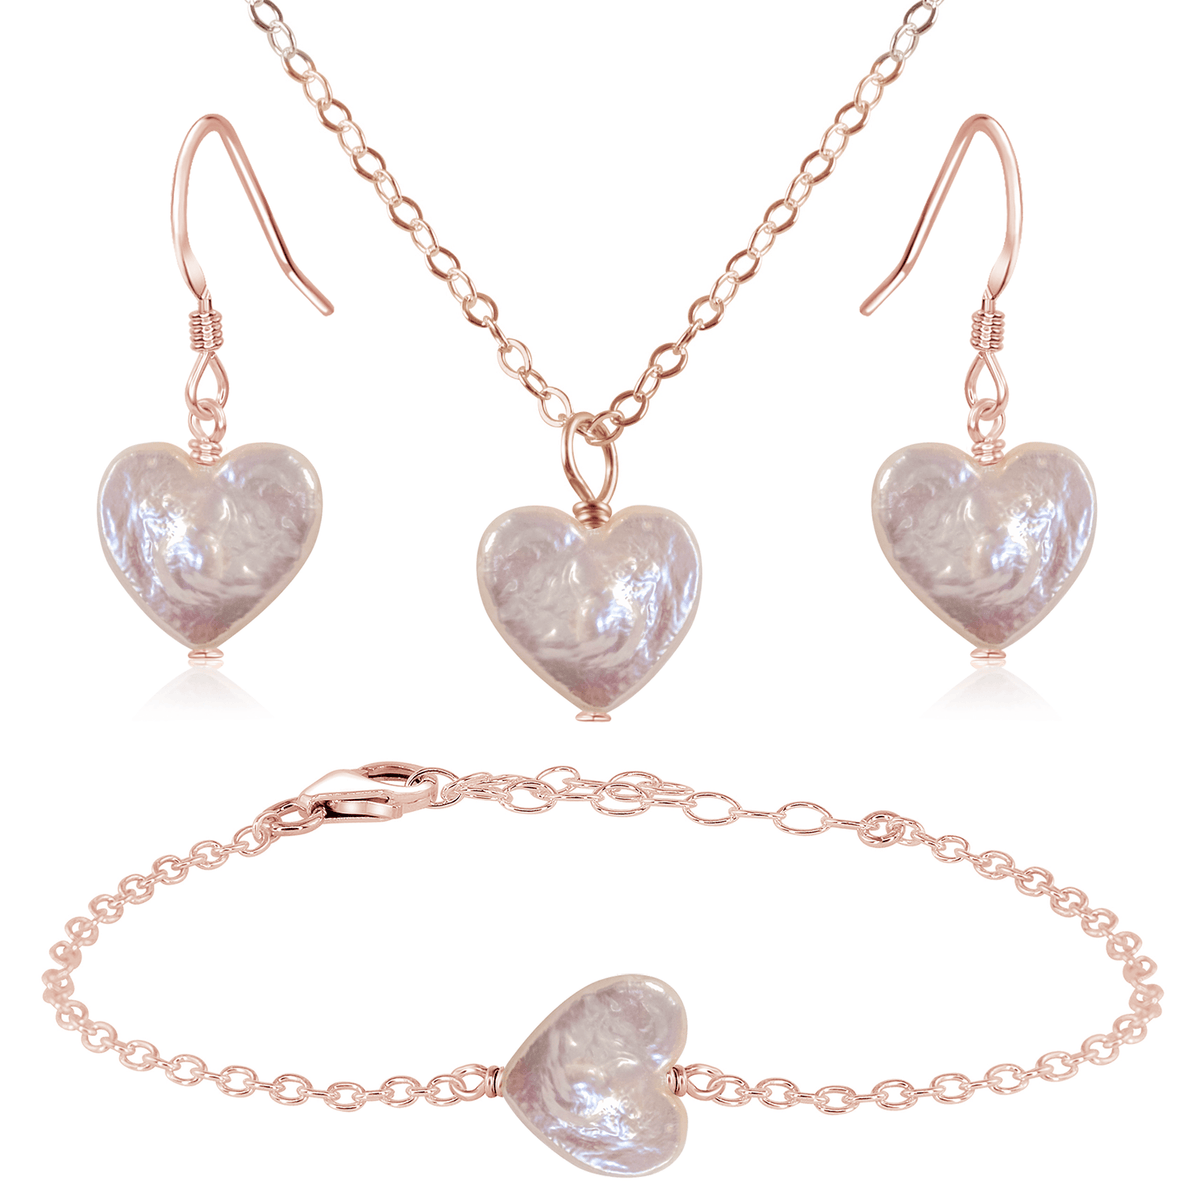 Freshwater Pearl Heart Jewellery Set - Freshwater Pearl Heart Jewellery Set - 14k Rose Gold Fill / Cable / Necklace & Earrings & Bracelet - Luna Tide Handmade Crystal Jewellery